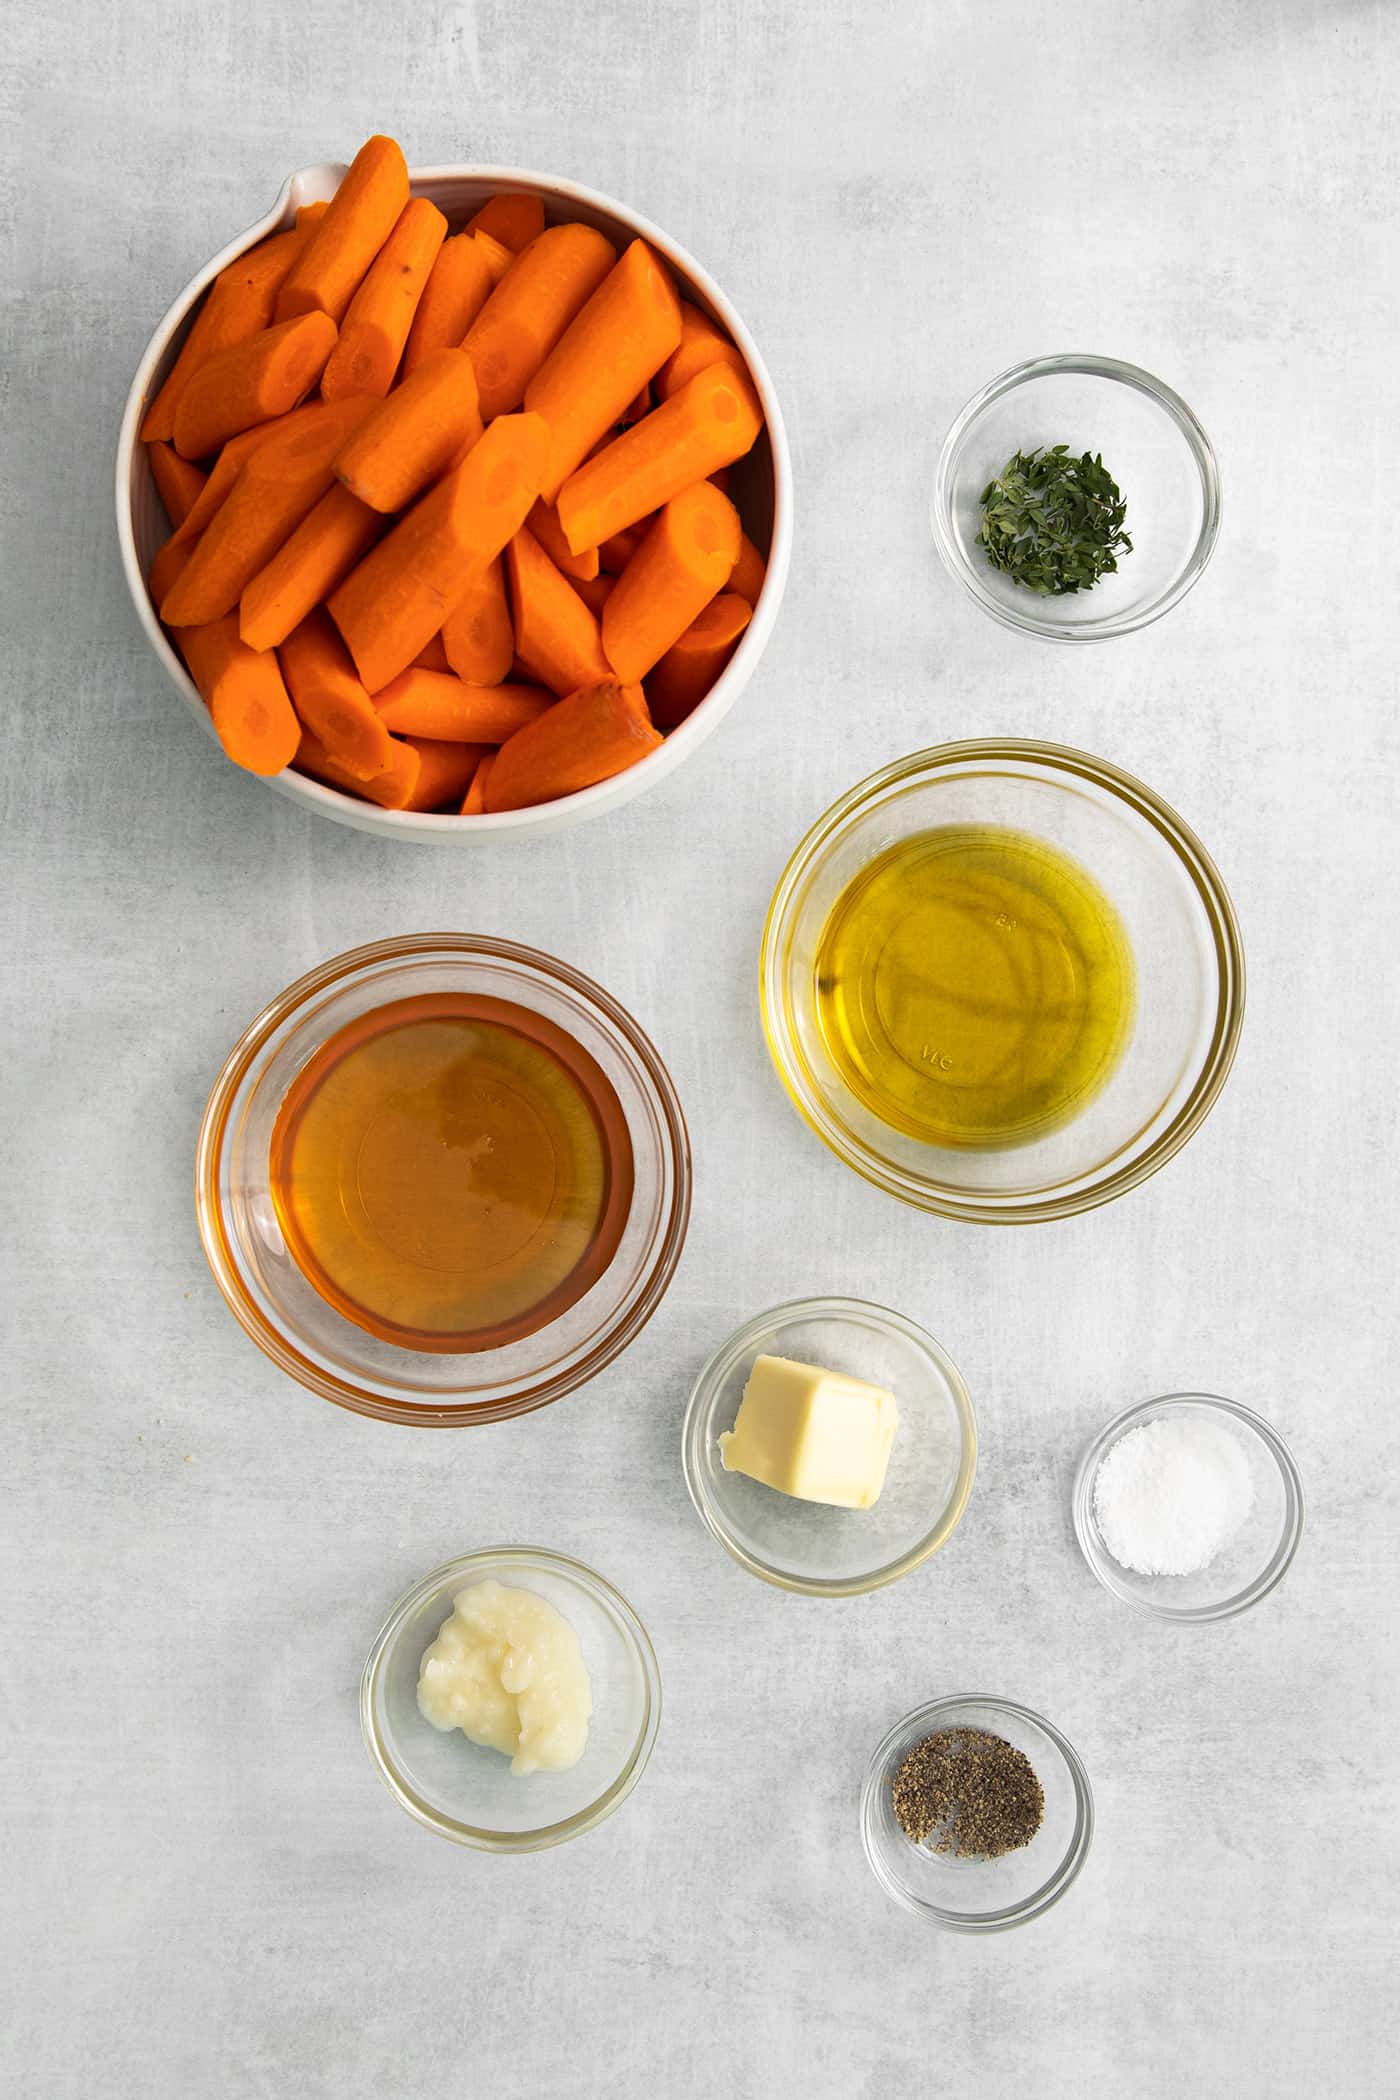 Honey garlic carrot ingredients